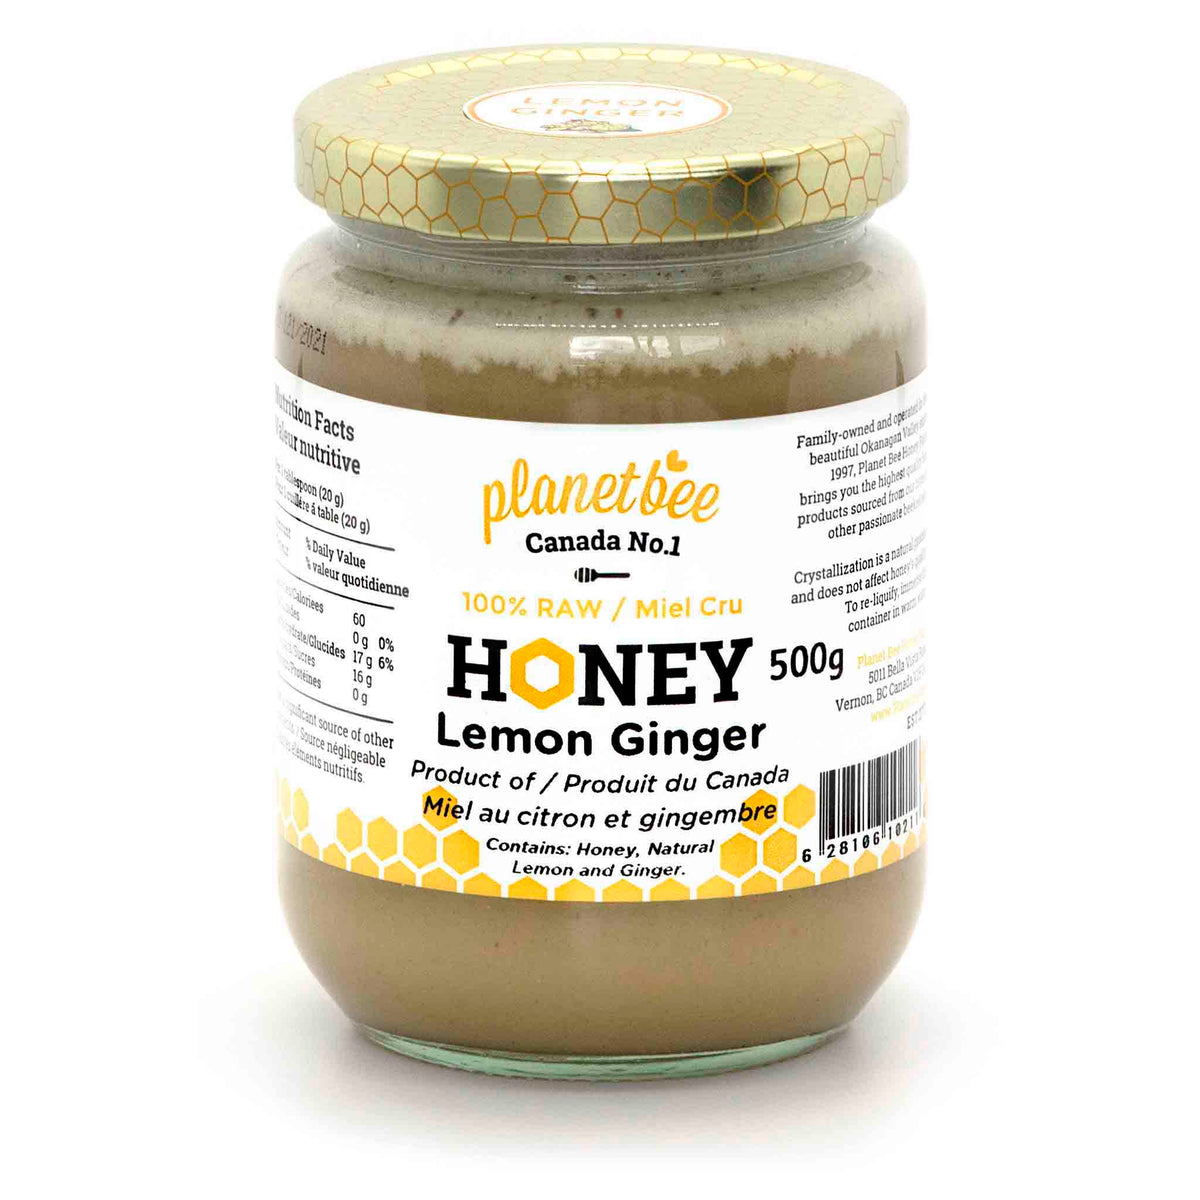 lemon ginger infused honey creamed